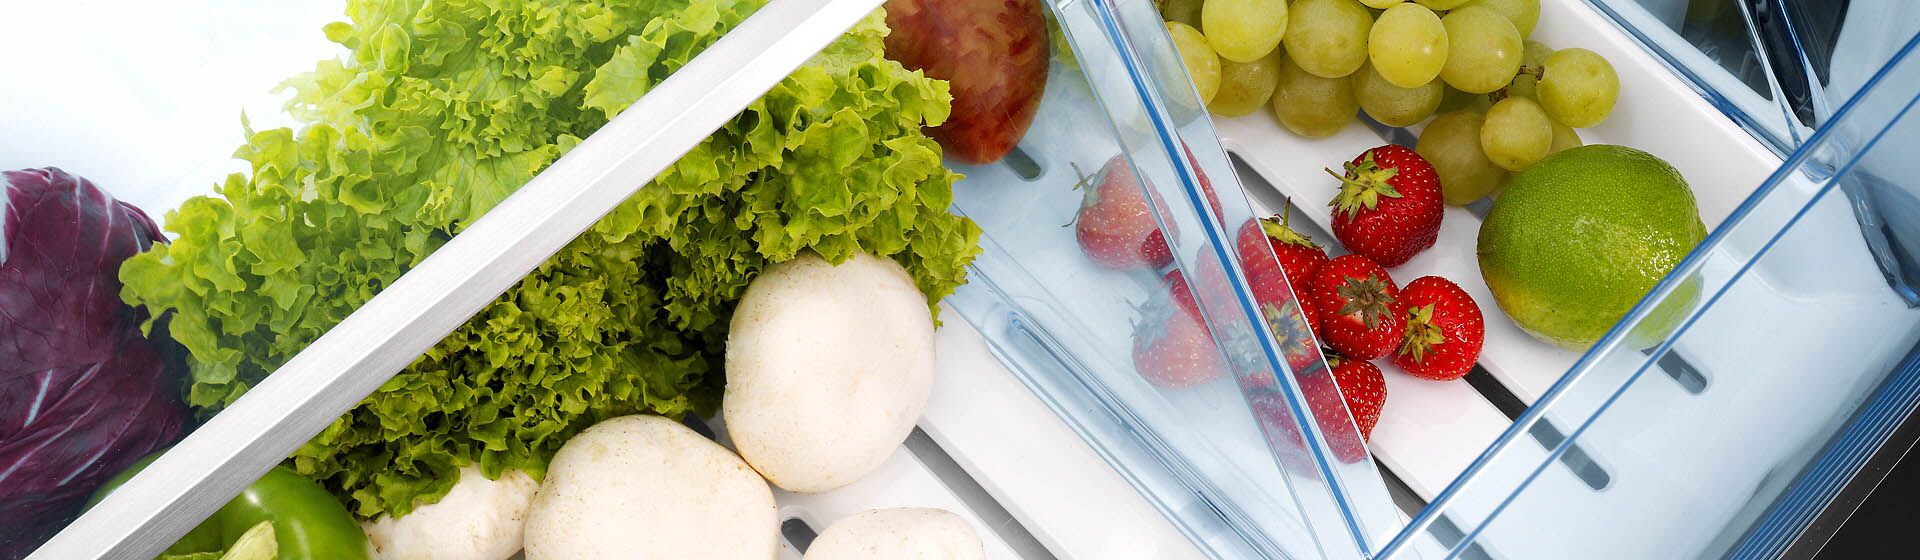 Как долго можно хранить овощи в холодильнике?